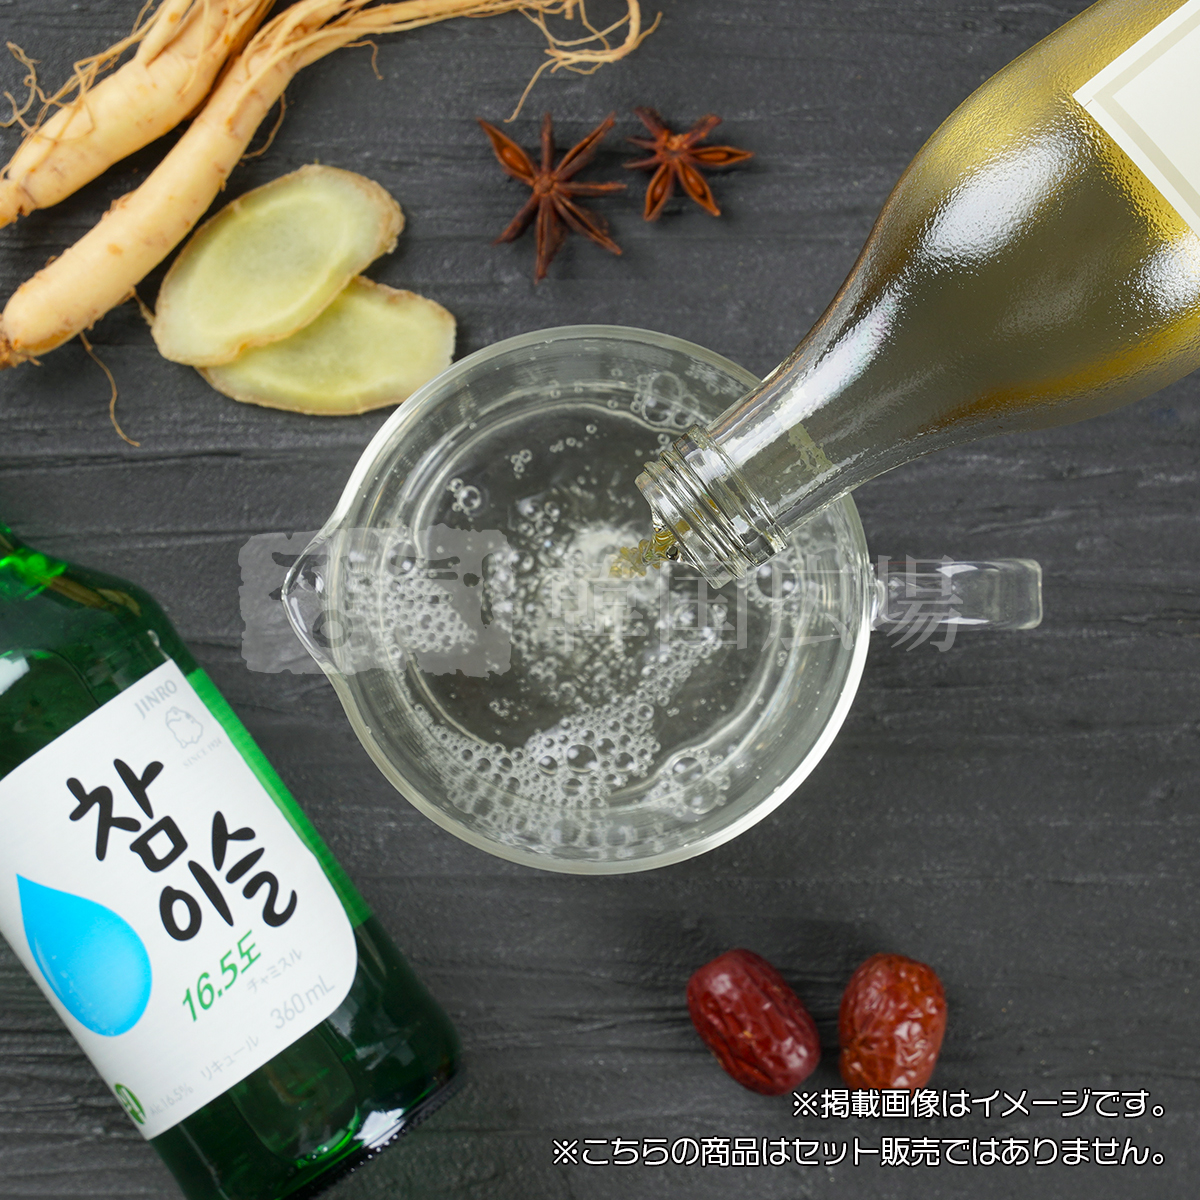 ... 100 -years old sake 375ml / Korea sake 